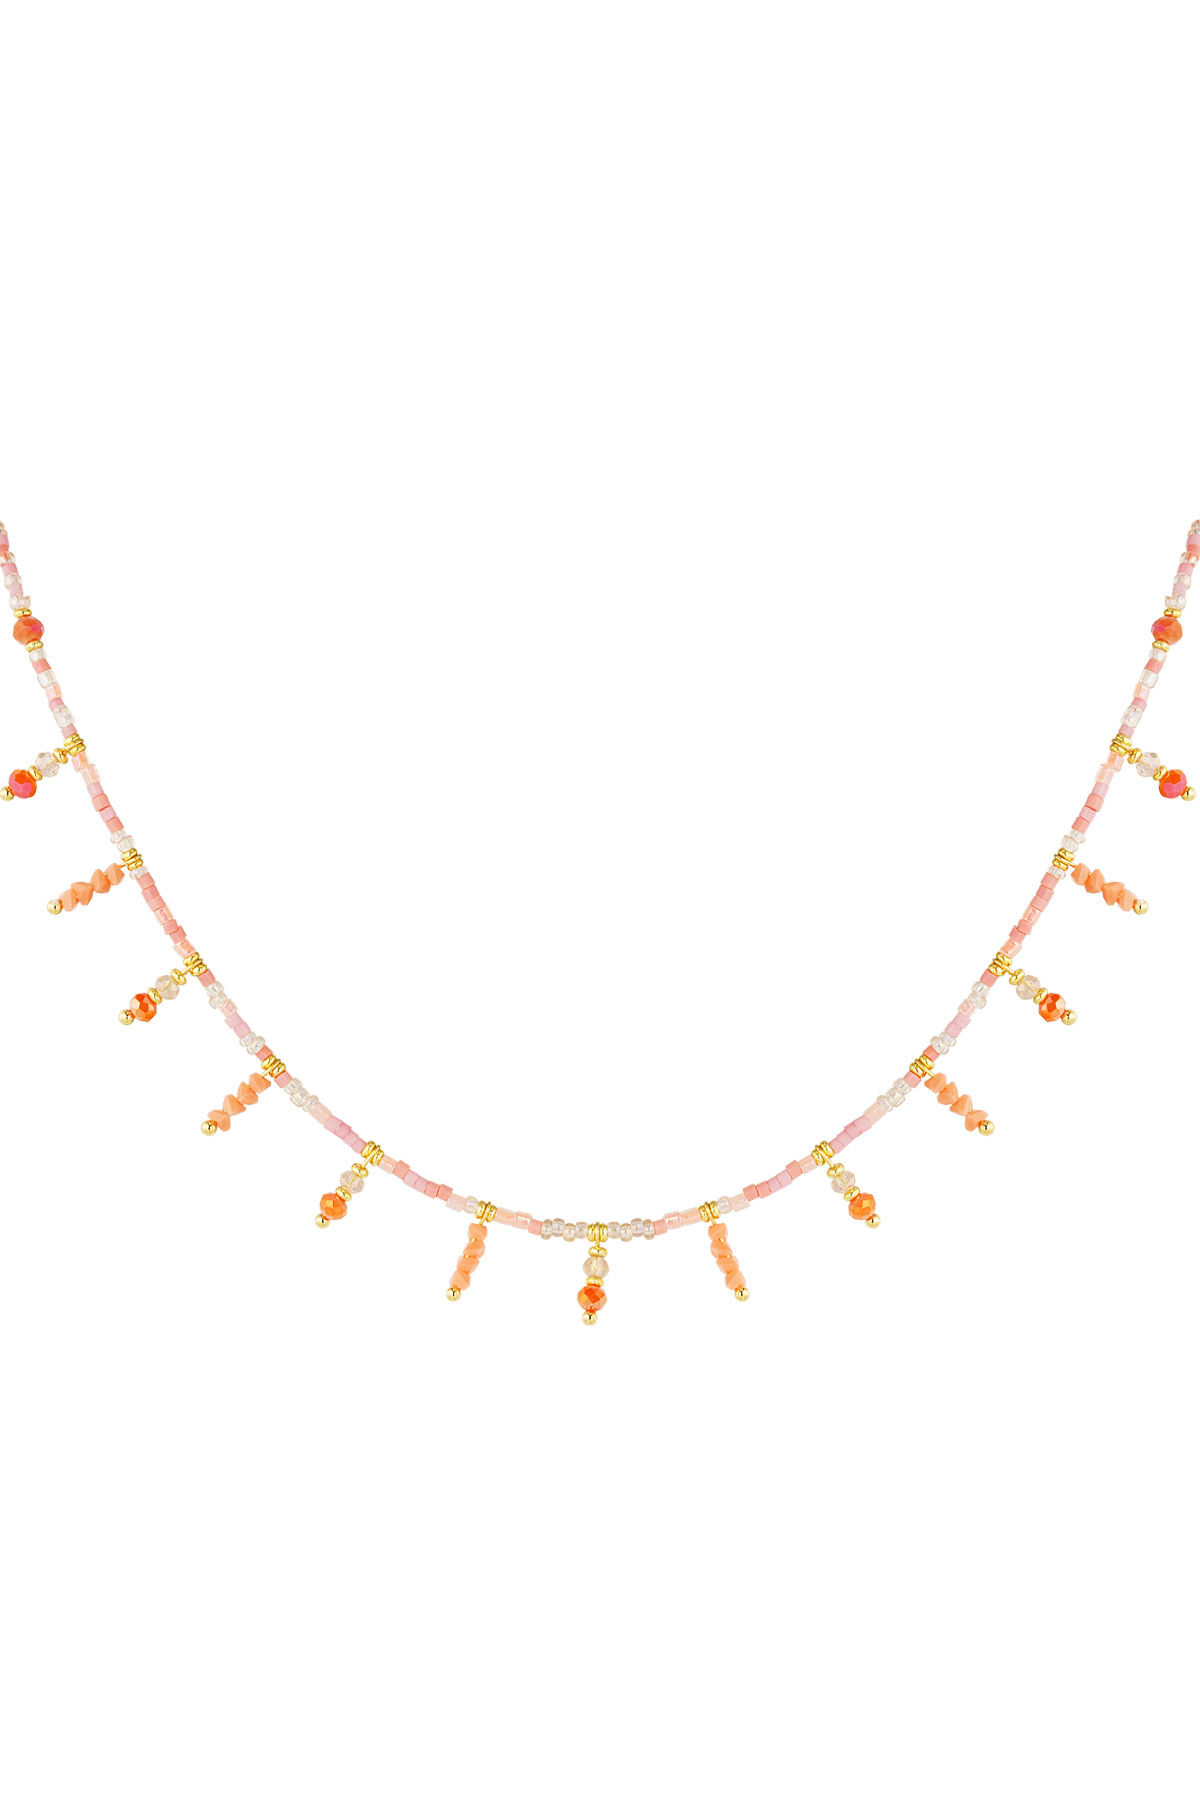 Halskette Summer Sparkle - Orangegold h5 